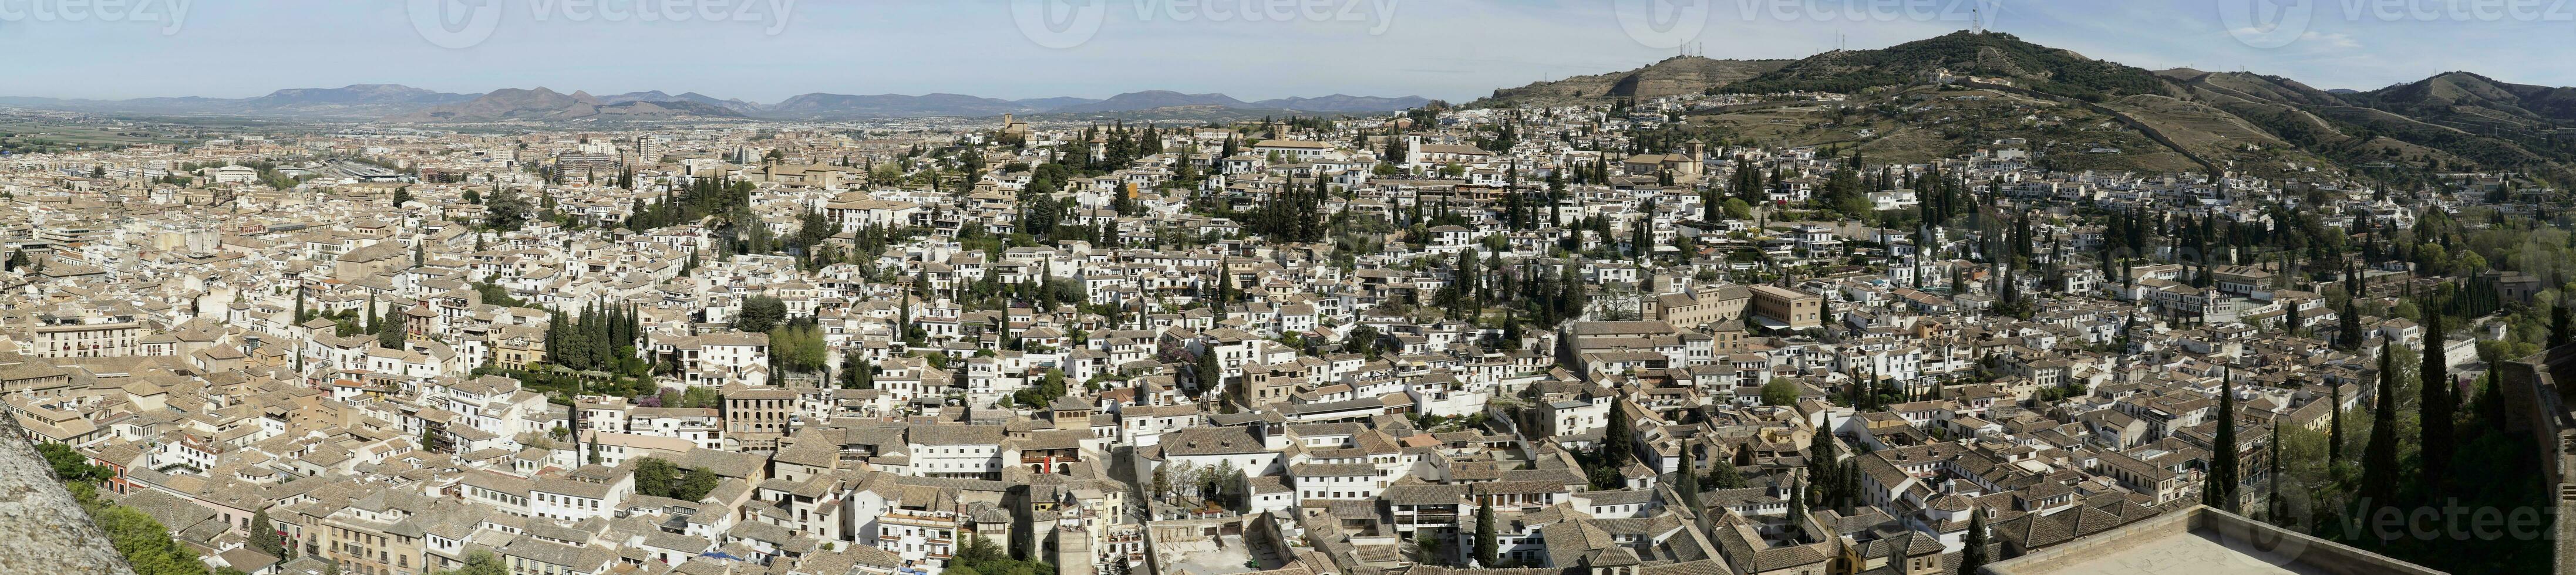 panoramisch visie van Granada stad in Andalusië, Spanje foto